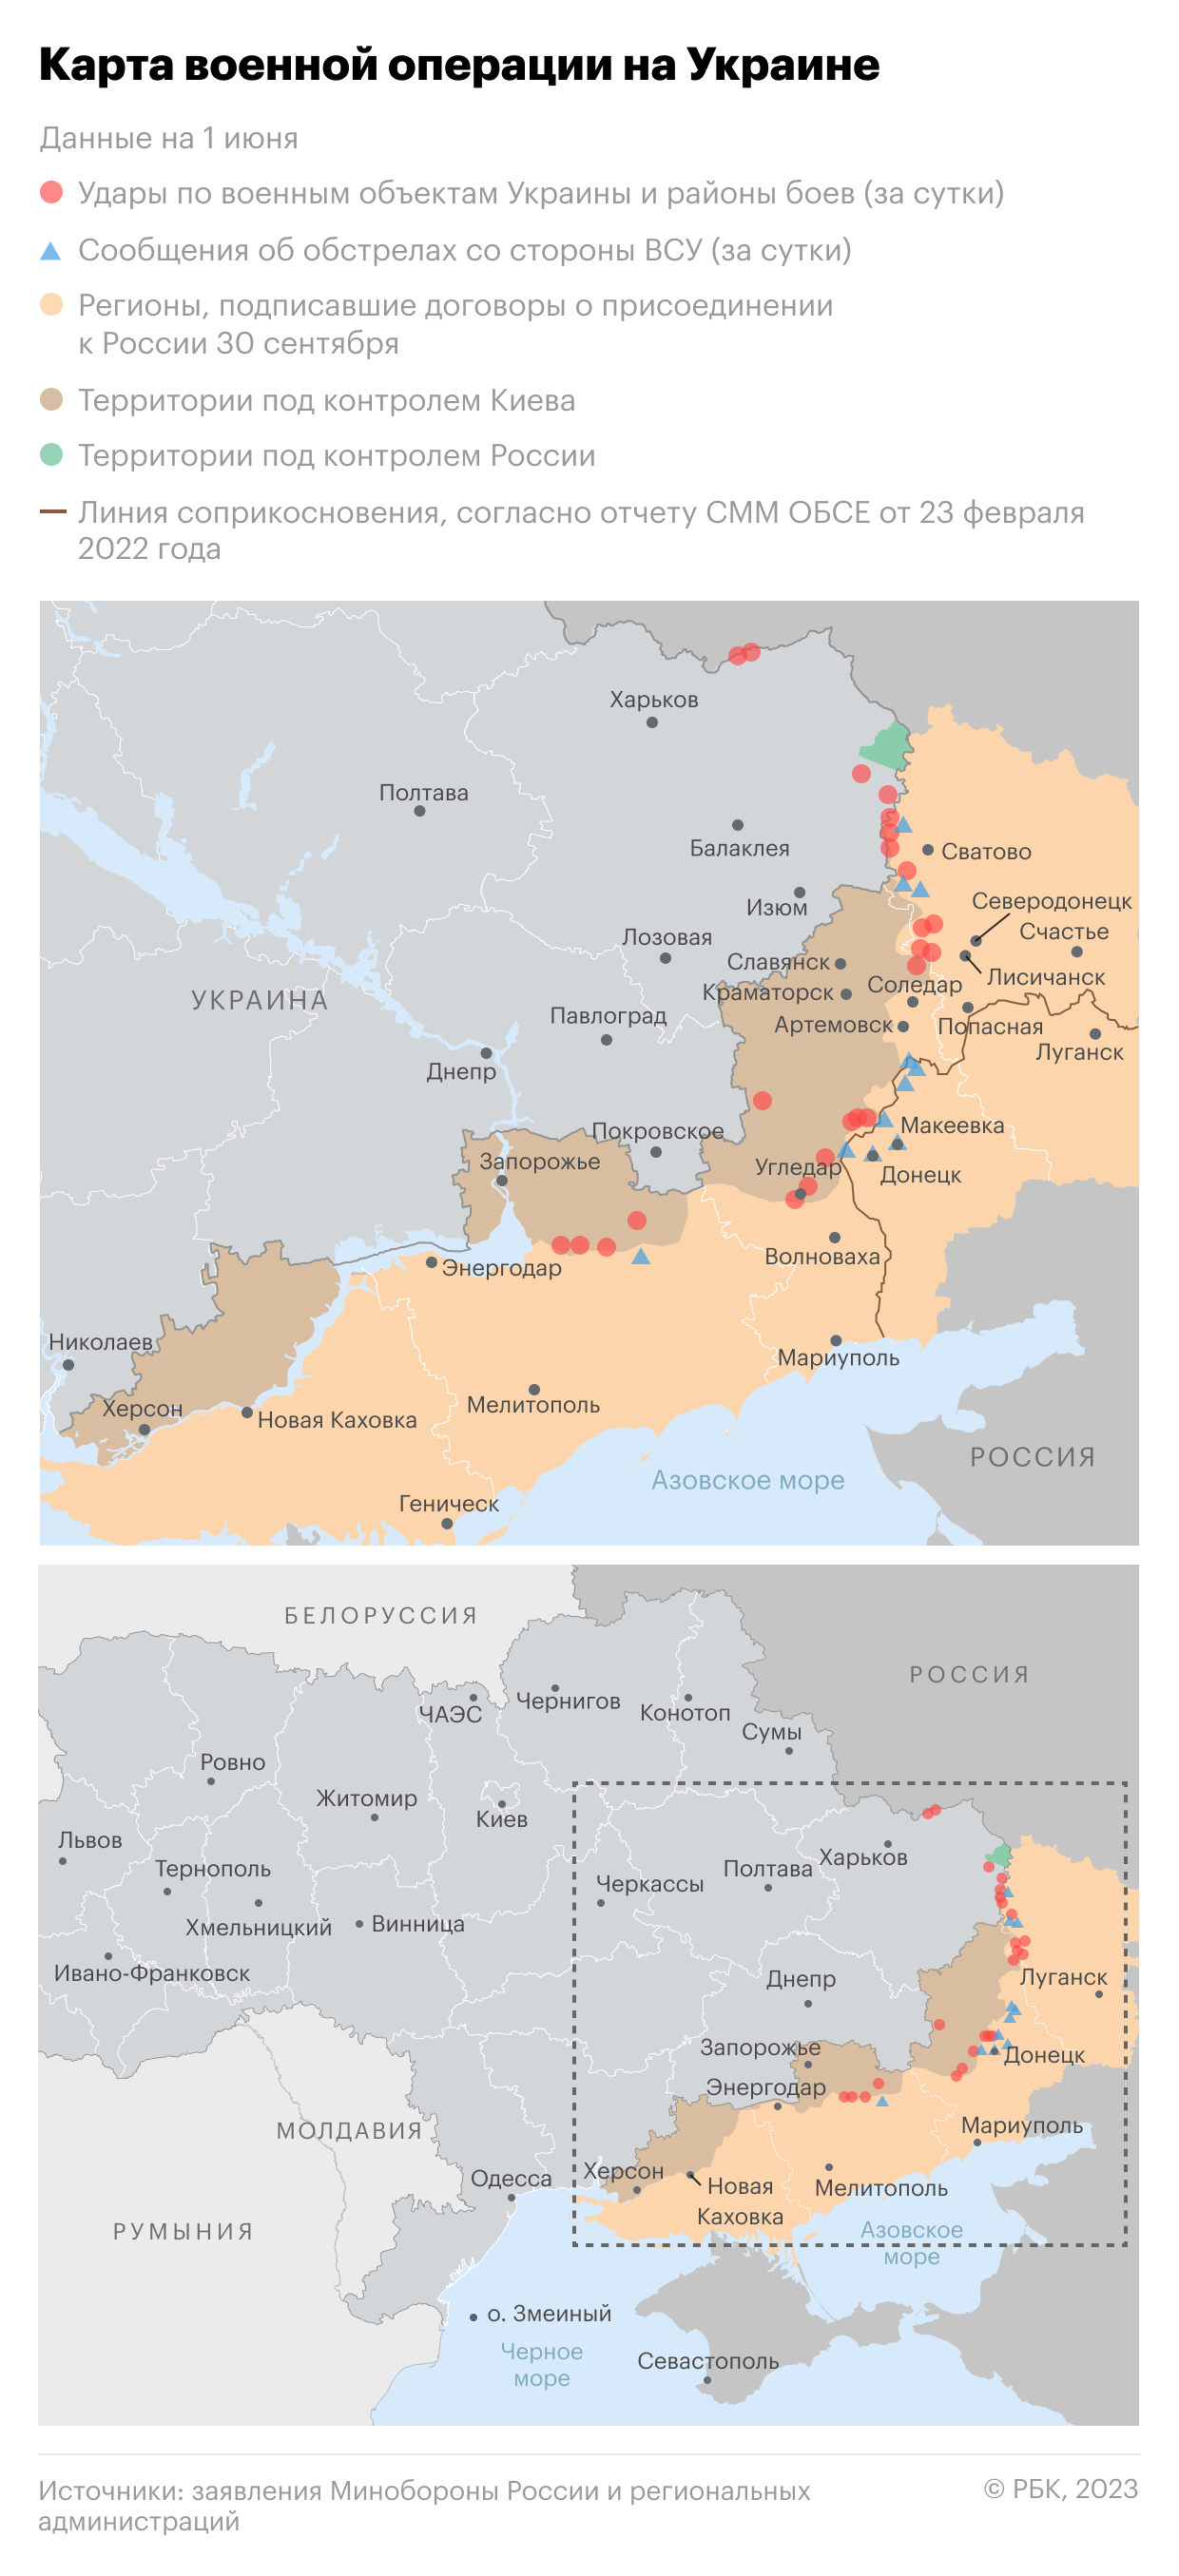 Власти Херсонской области попросят Путина включить регион в состав России